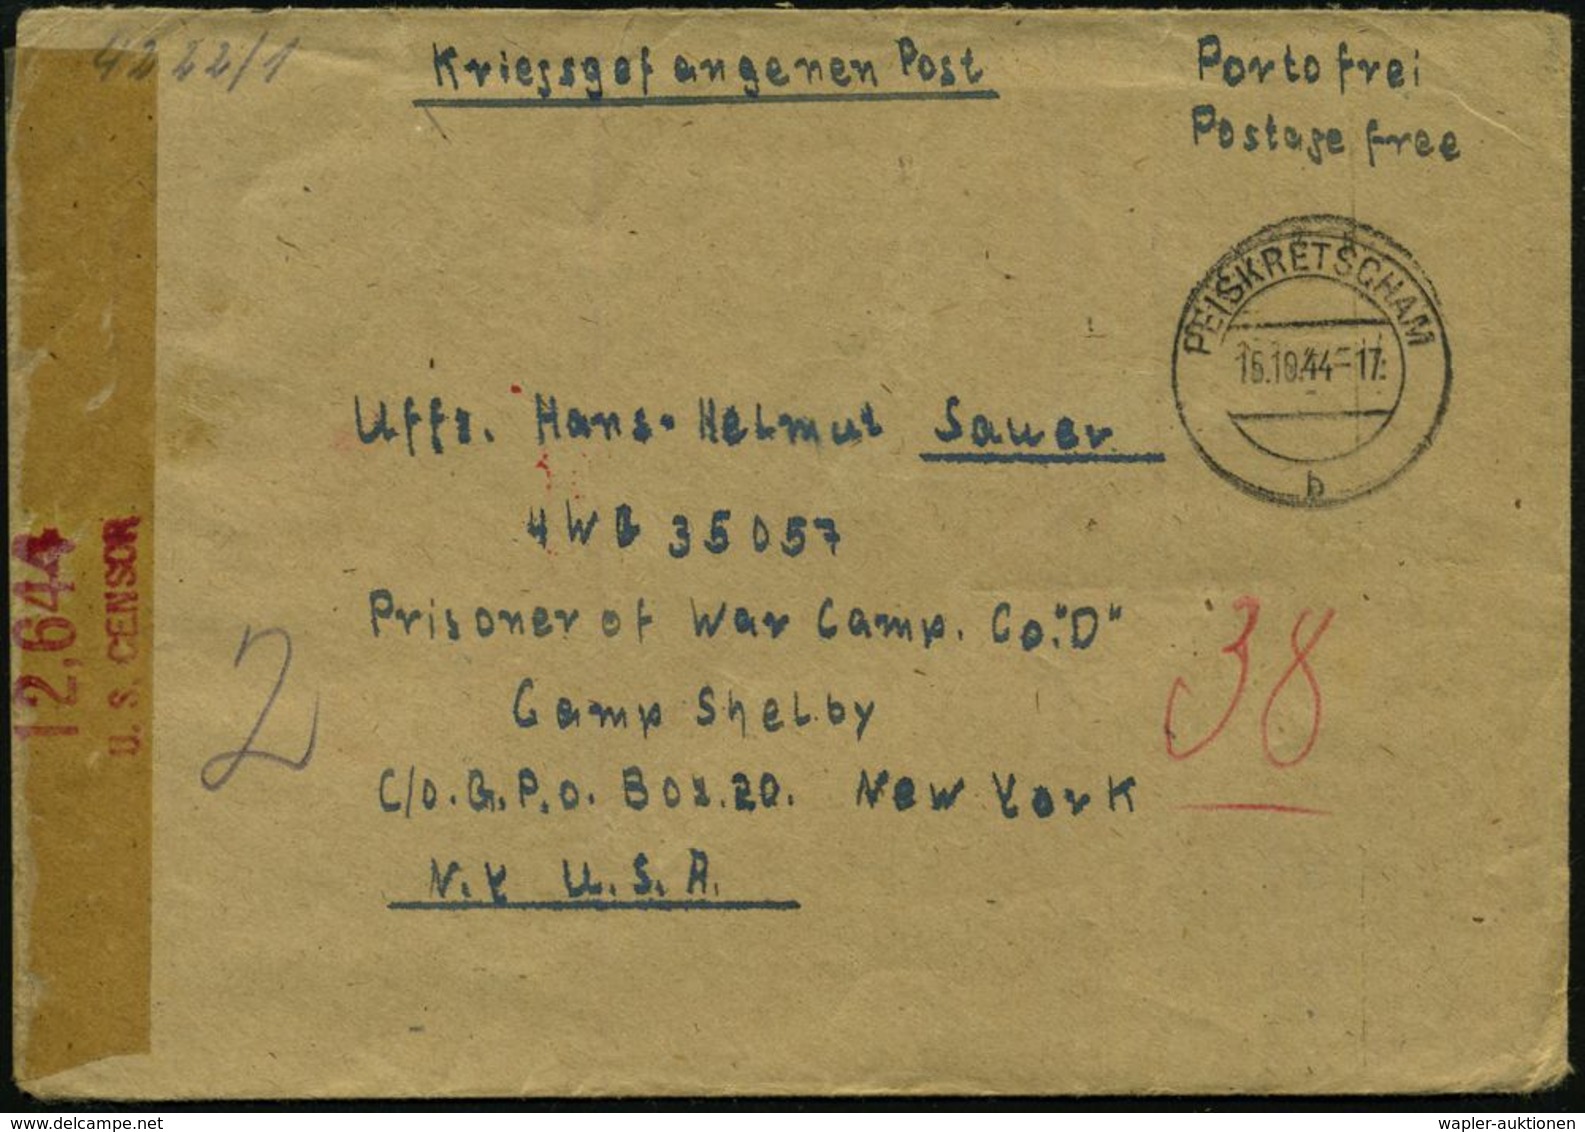 PEIKRETSCHAM/ B 1944 (15.10.) 2K-Steg + Hs. Vermerk "Portofrei/ Postage Free" + Rs. OKW-Zensurstreifen: Geöffnet/b + 2x  - Croix-Rouge